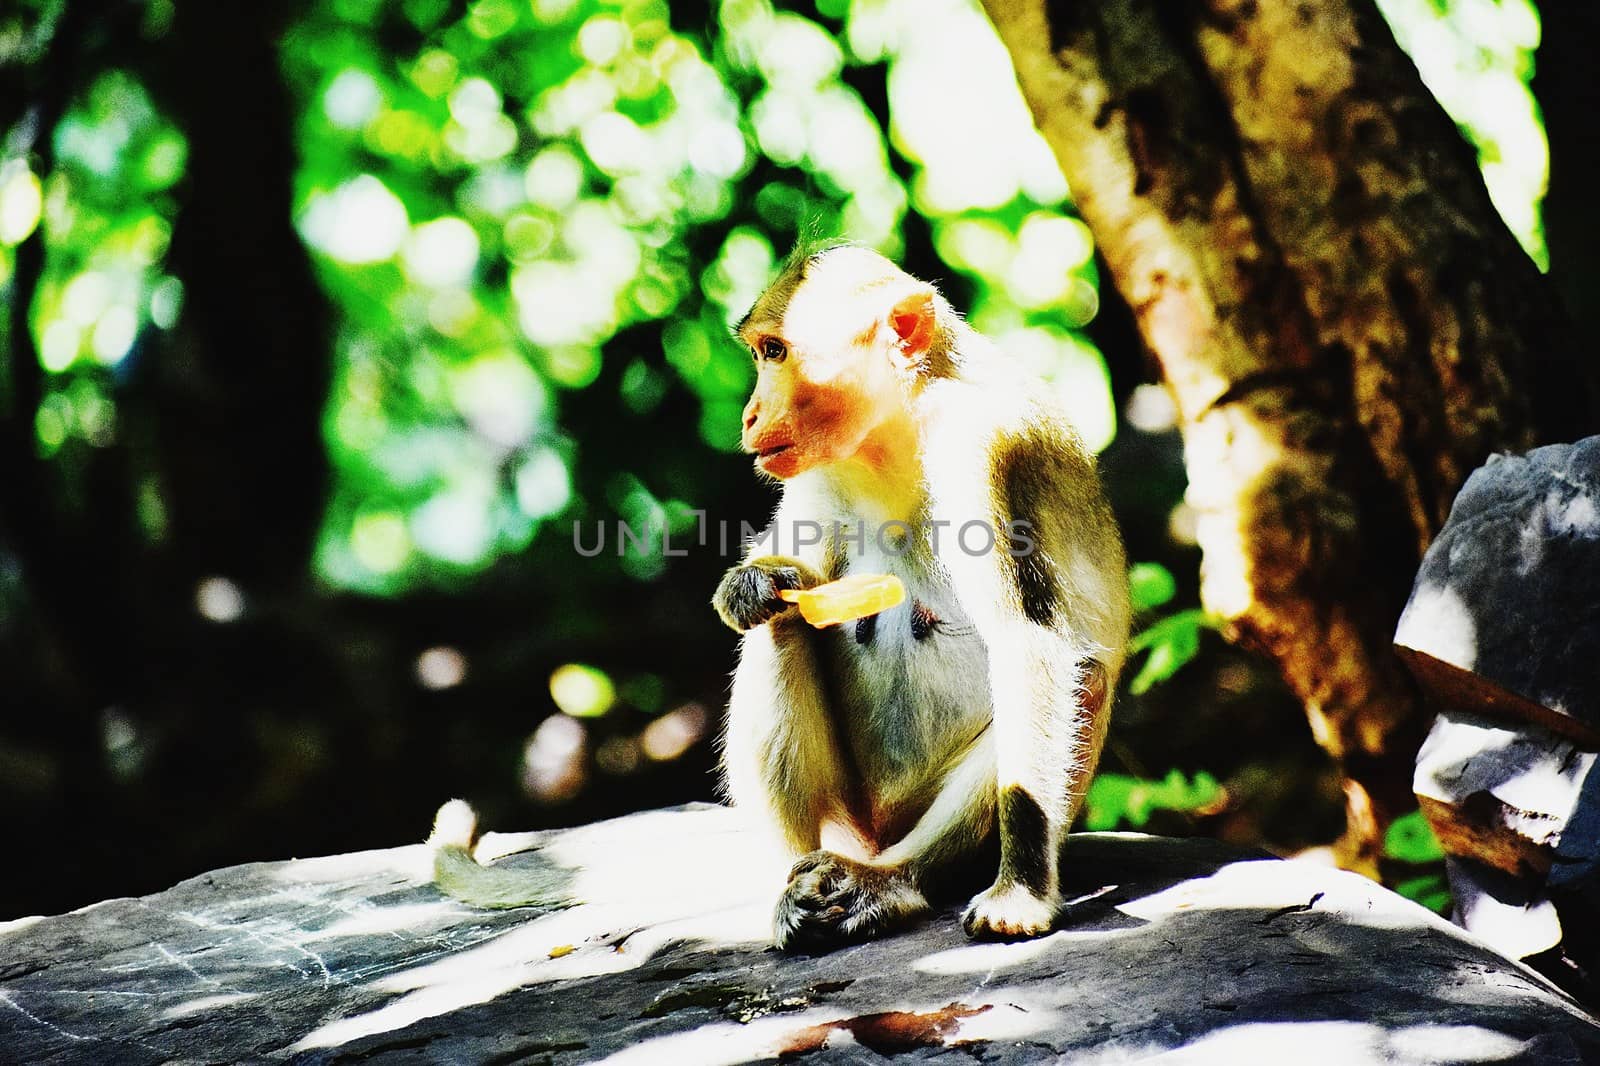 A Monkey is eating something by ravindrabhu165165@gmail.com